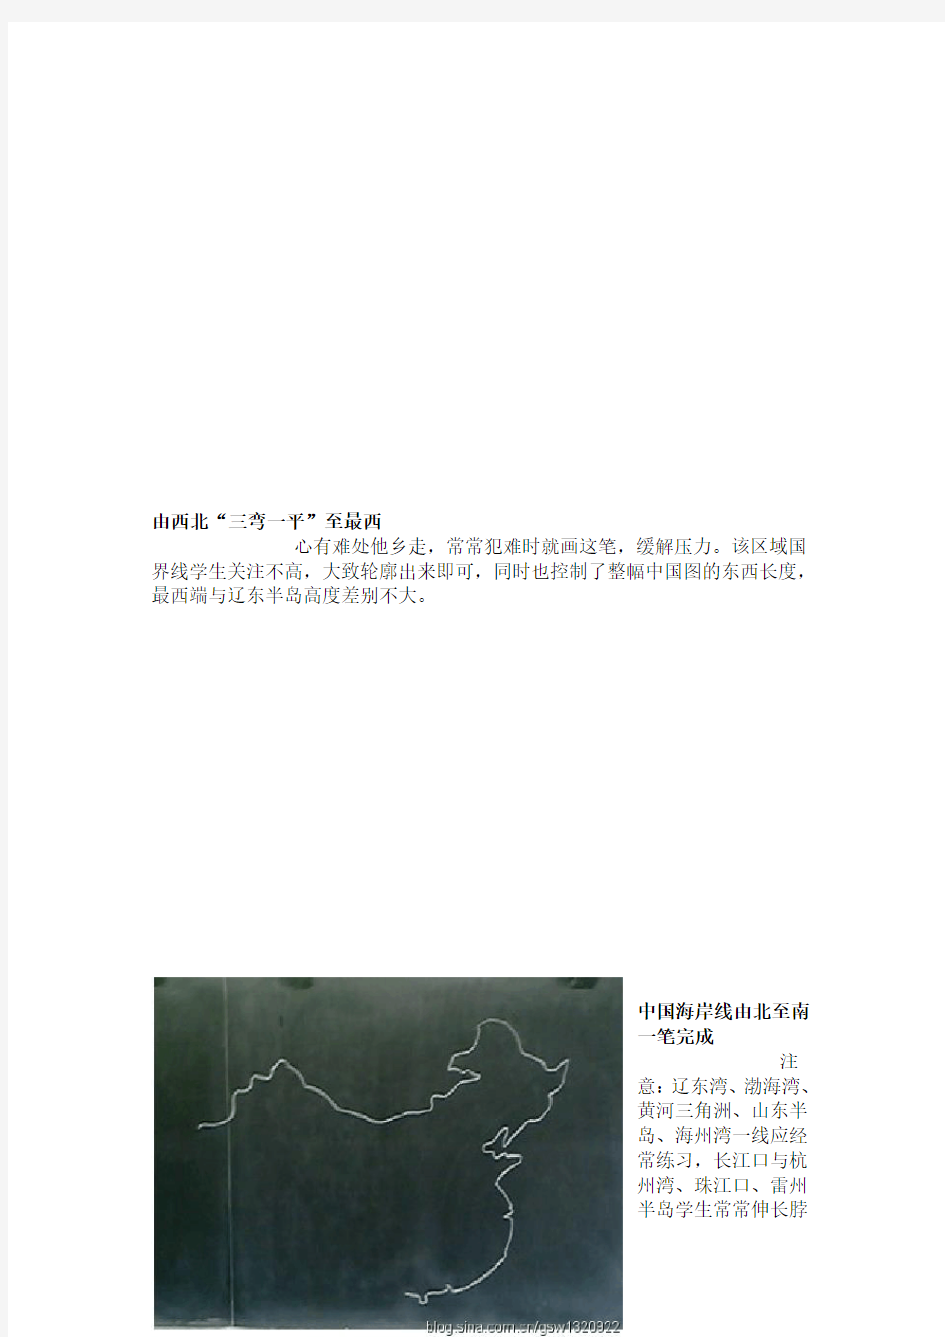 中国地图画法和世界轮廓